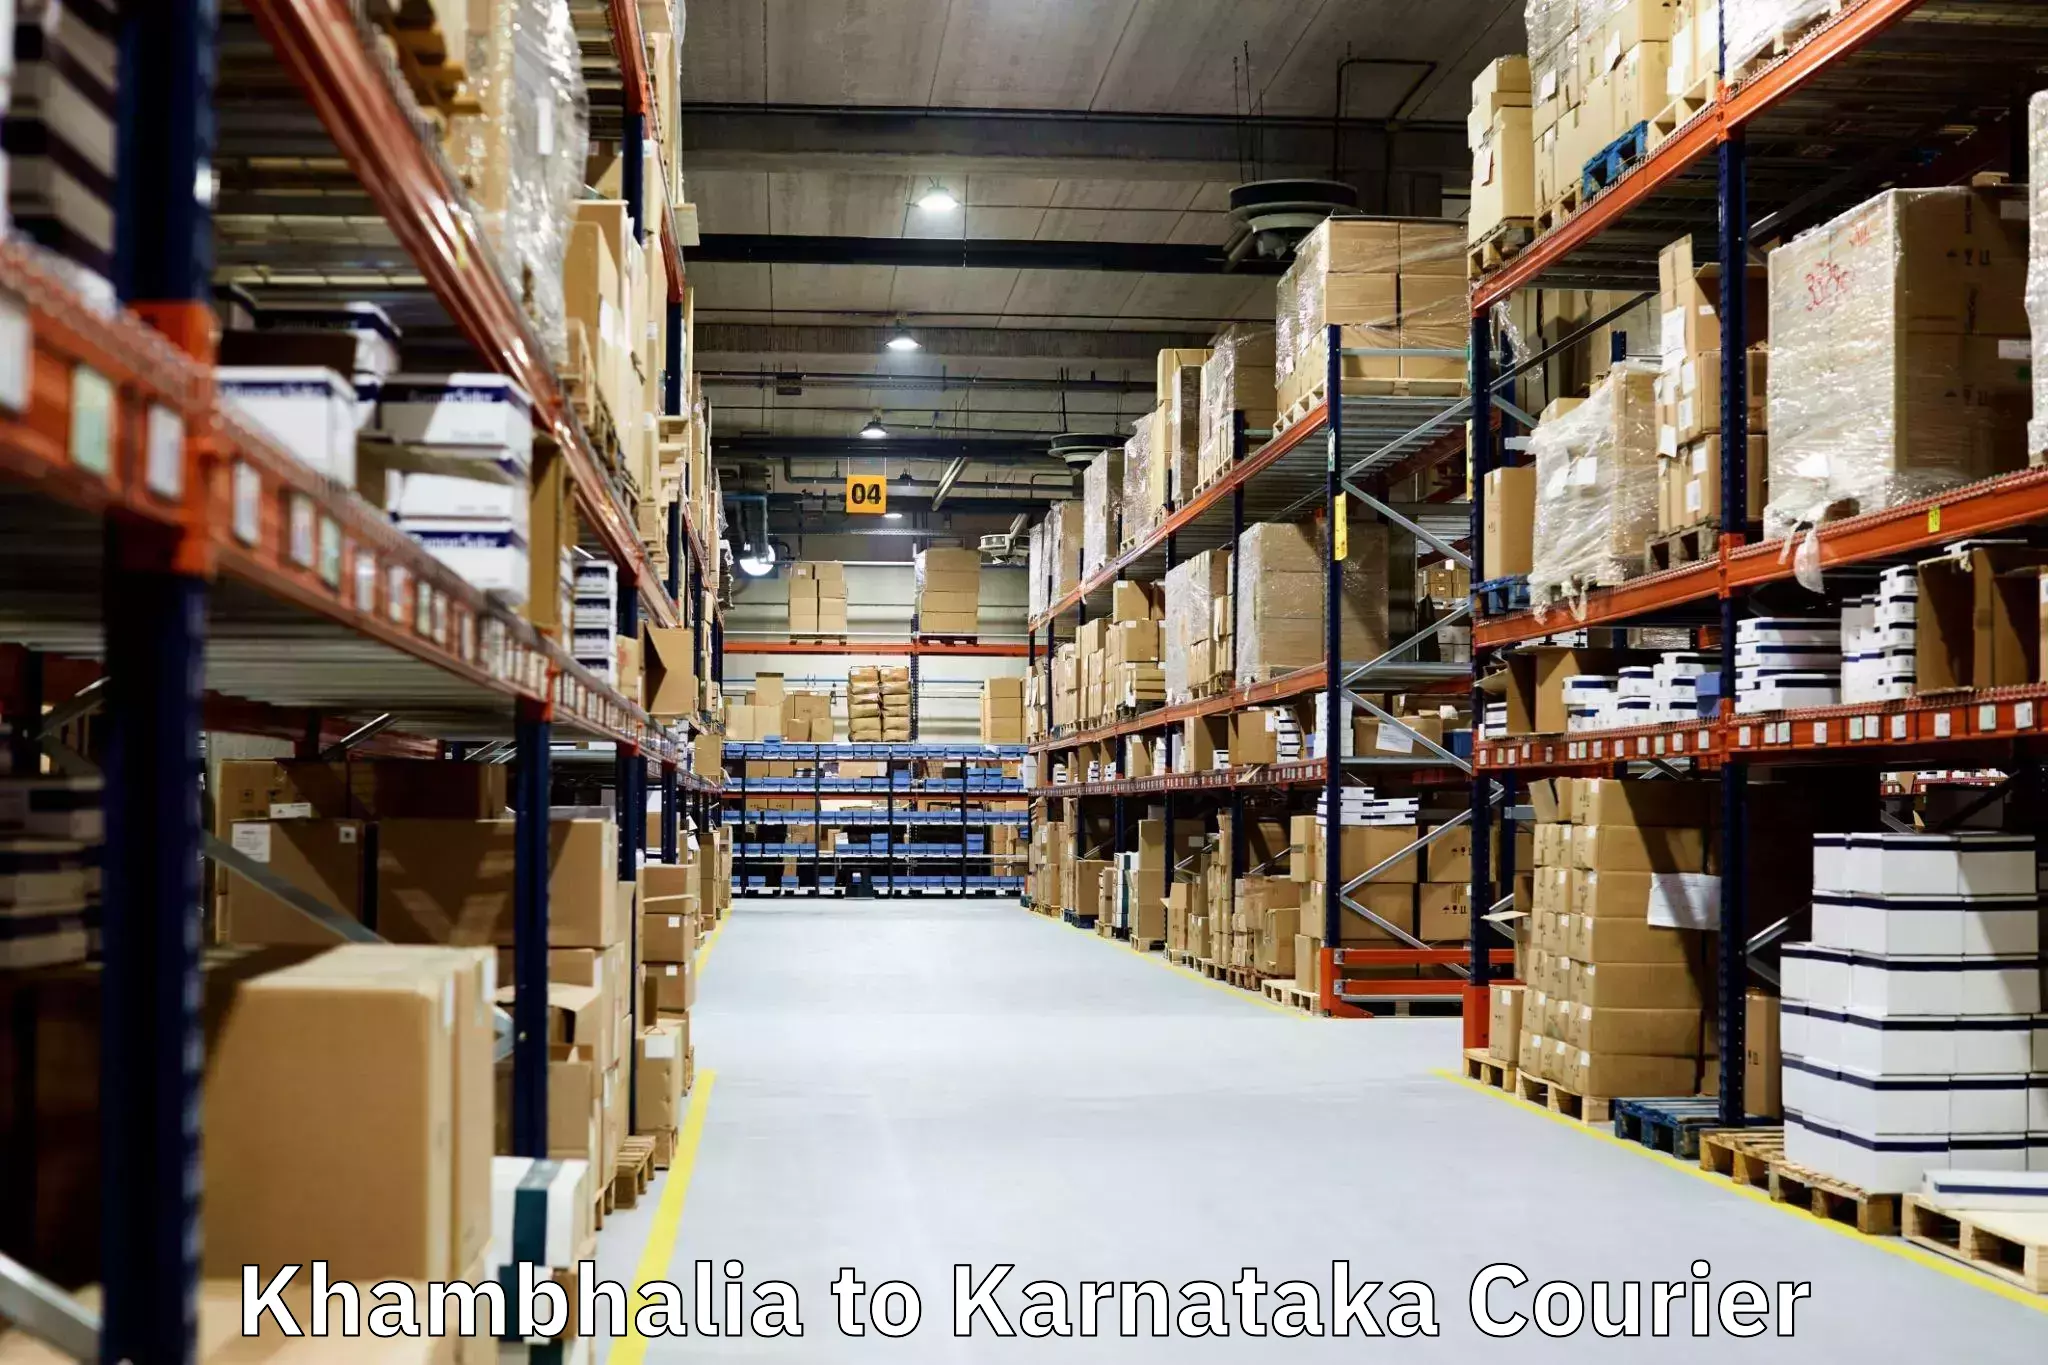 Moving and packing experts Khambhalia to Deodurga